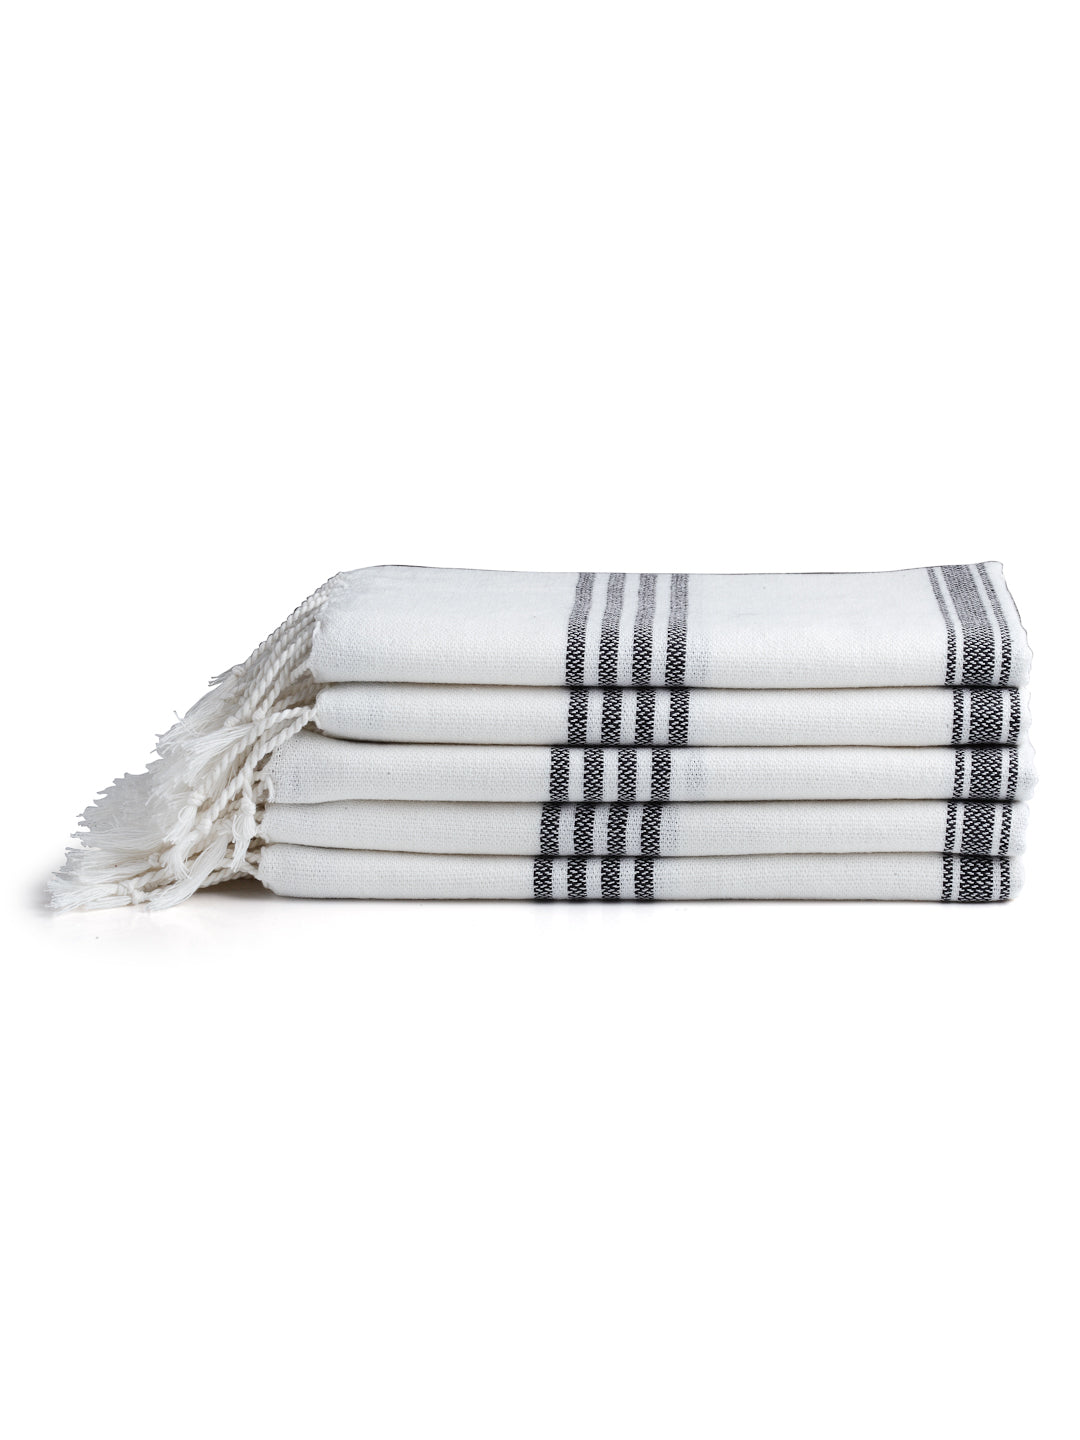 Arrabi Black Solid Handwoven Cotton Hand Towel (Set of 5) (90 X 35 cm)